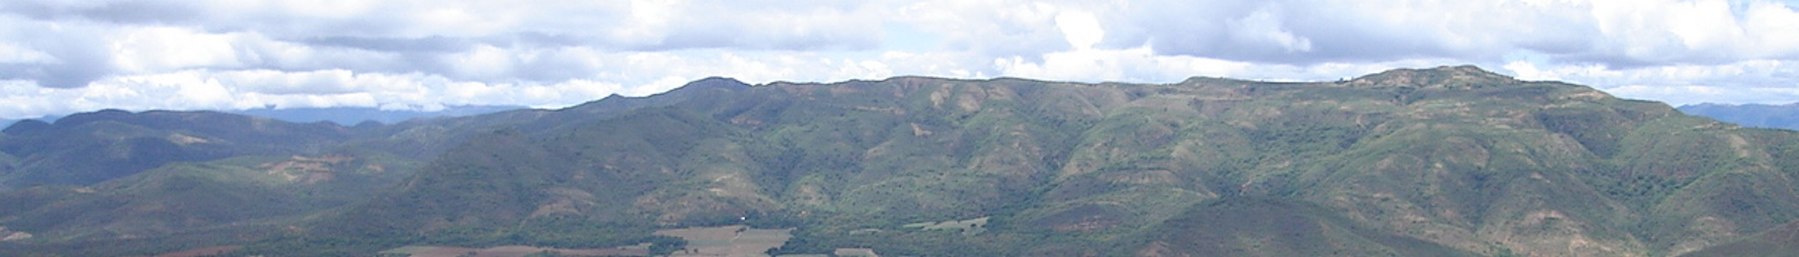 Comarpa.jpg के ऊपर WV बैनर ट्रॉपिकल तराई पर्वत